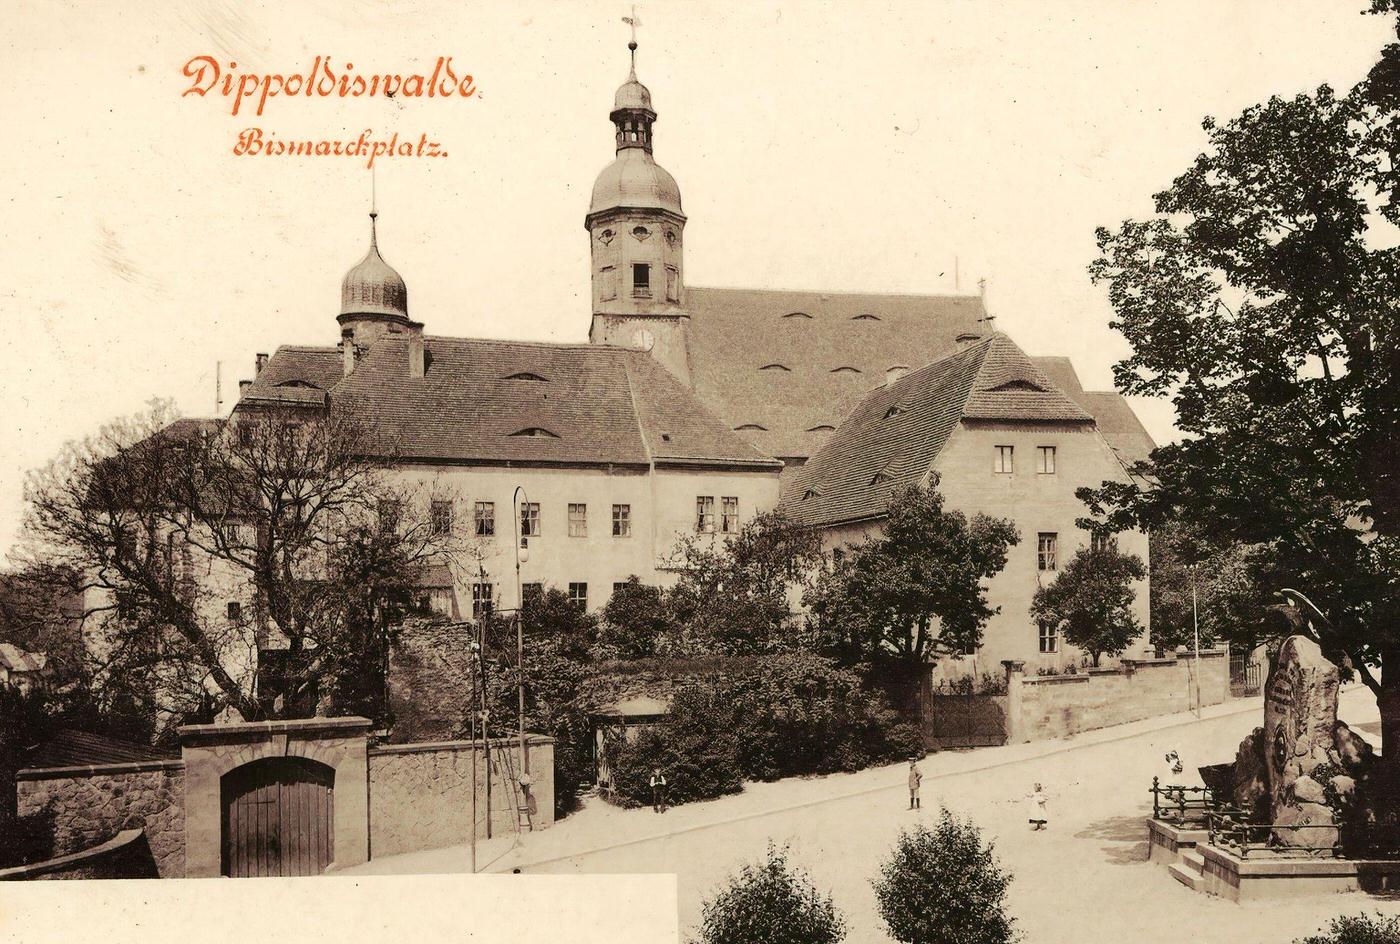 Churches in Dippoldiswalde, Monuments to Otto von Bismarck, 1899